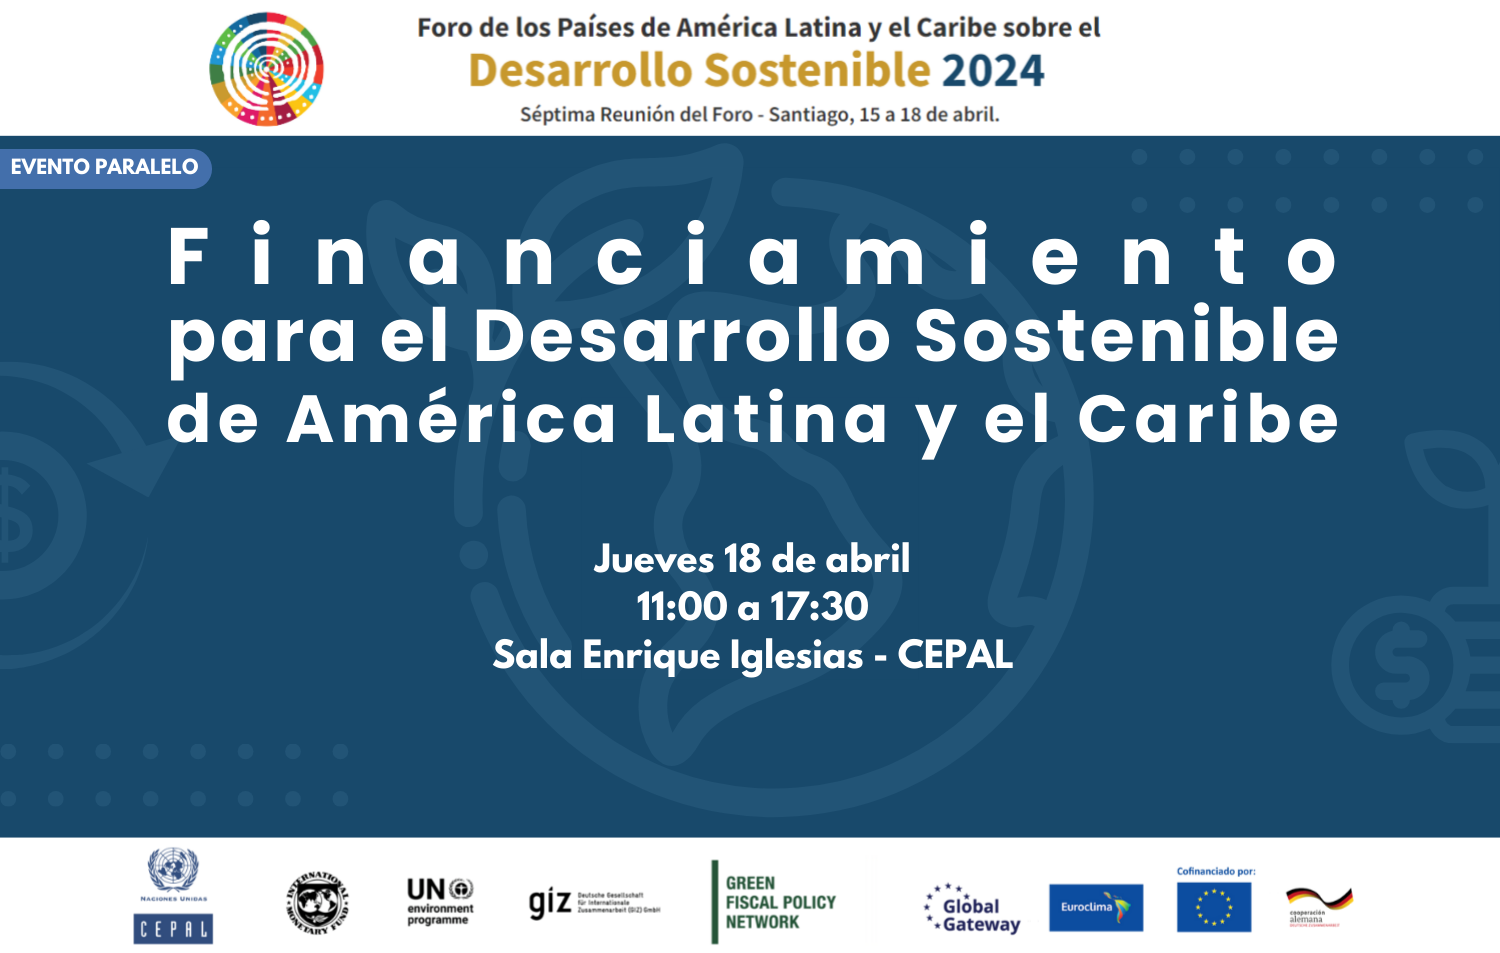 Financiamiento para el Desarrollo Sostenible de América Latina y el Caribe 